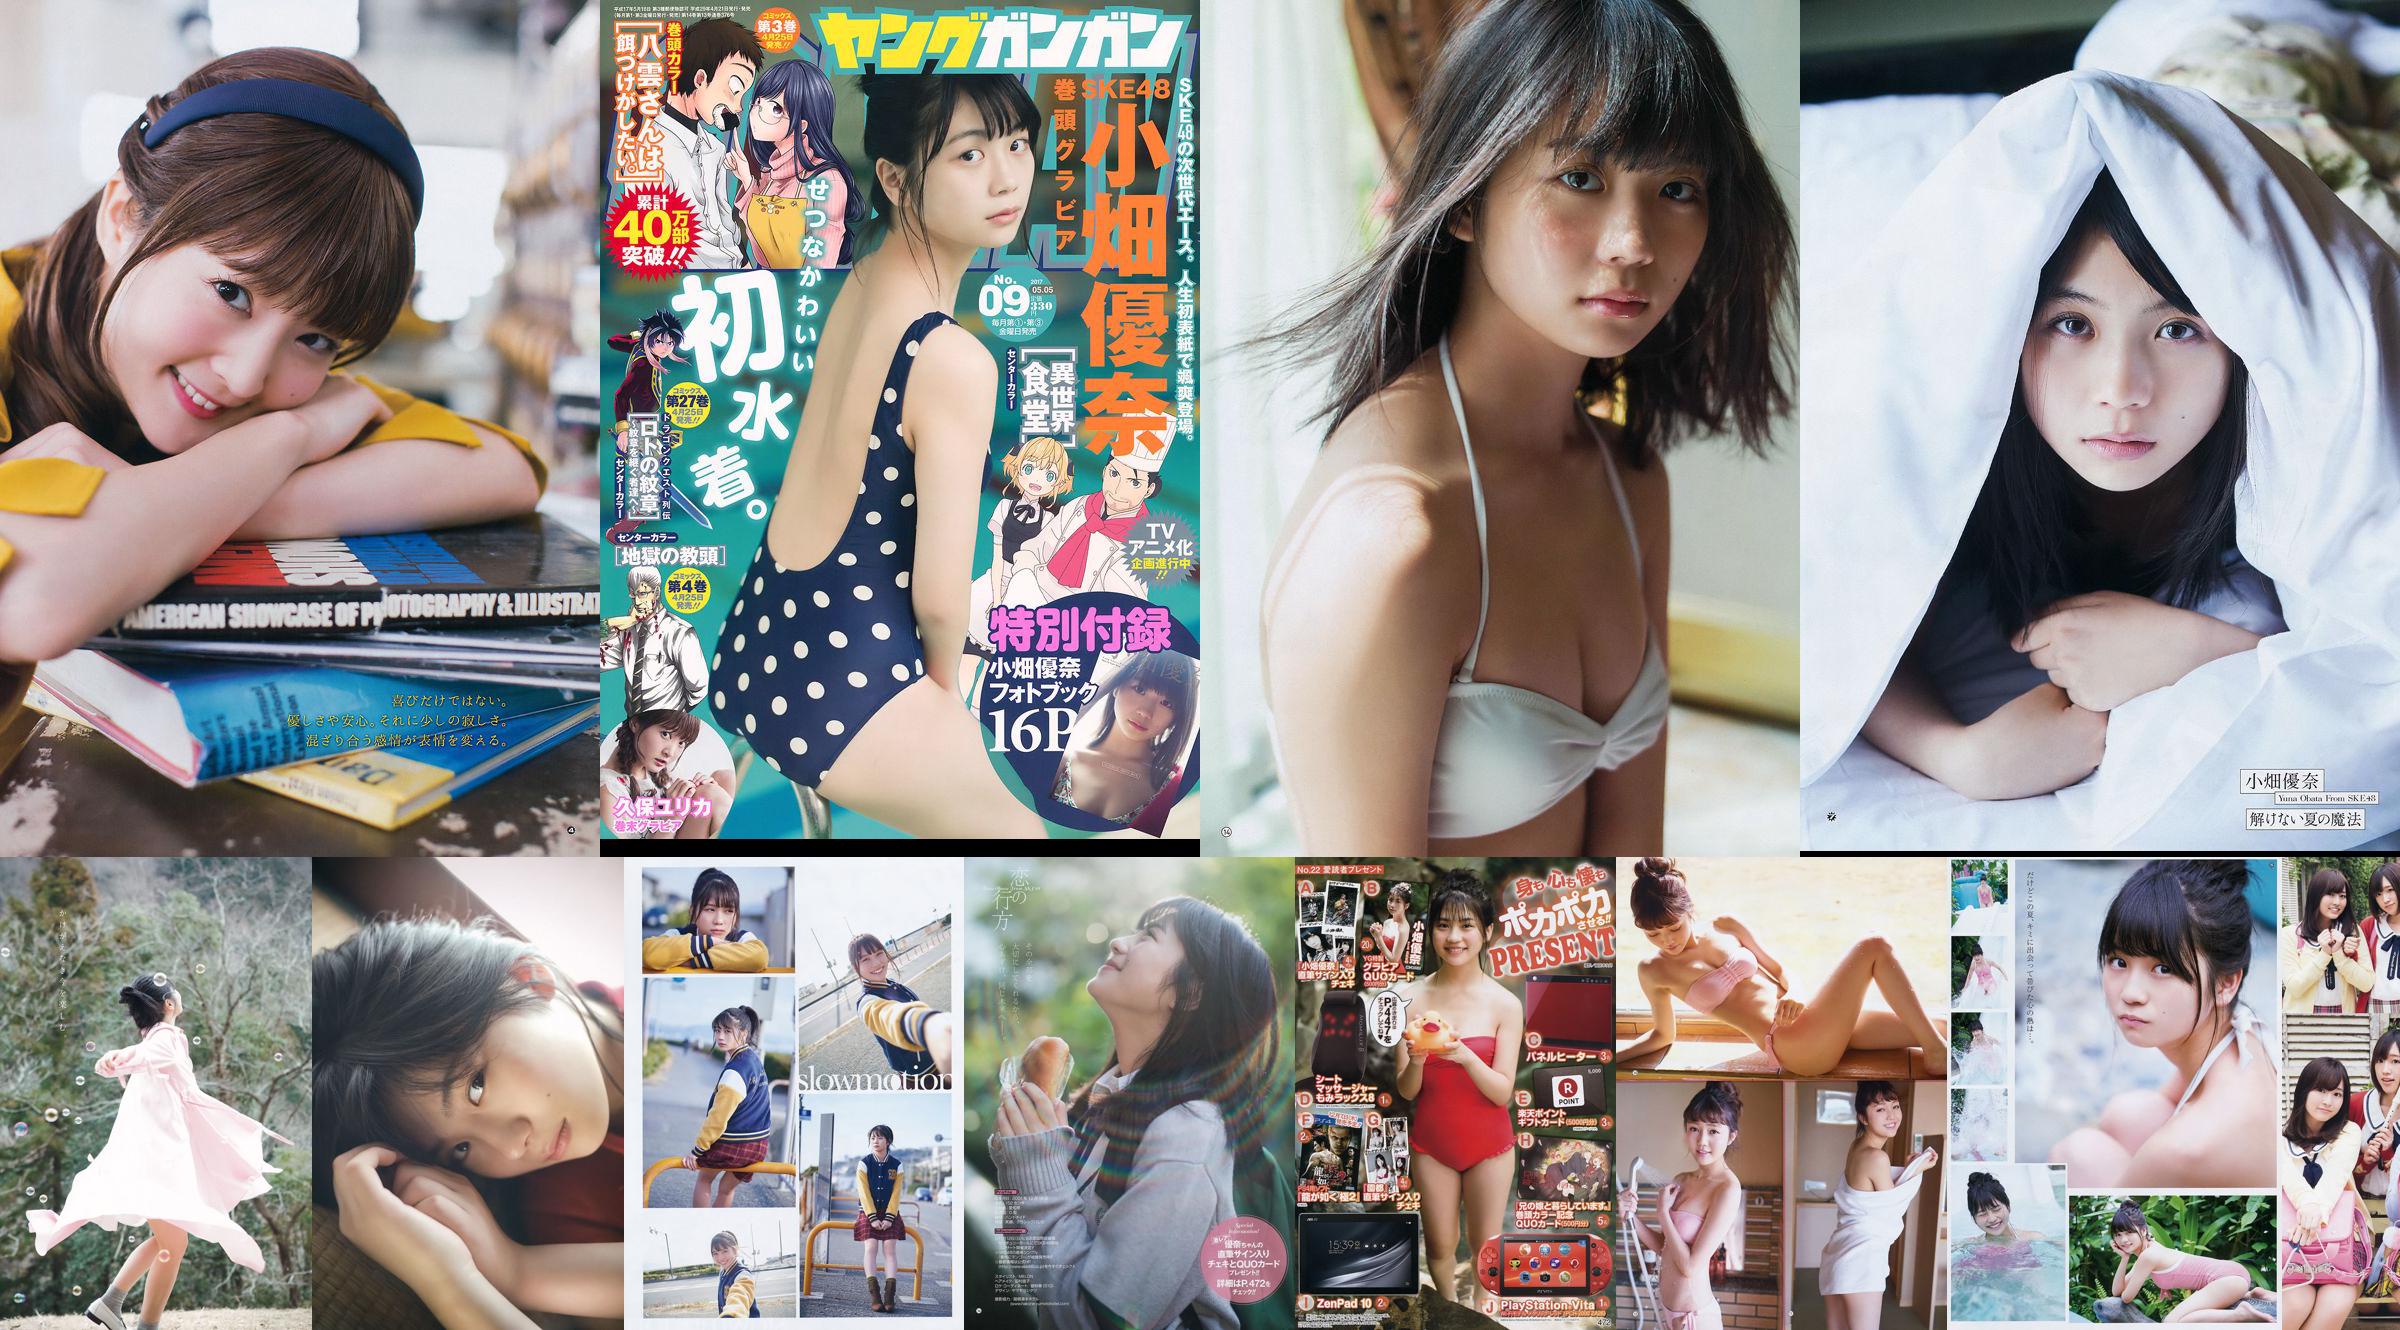 [Young Gangan] Yuna Obata Mina Oba Yume Hayashi 2018 No.12 Photo Magazine No.fce6da Page 4